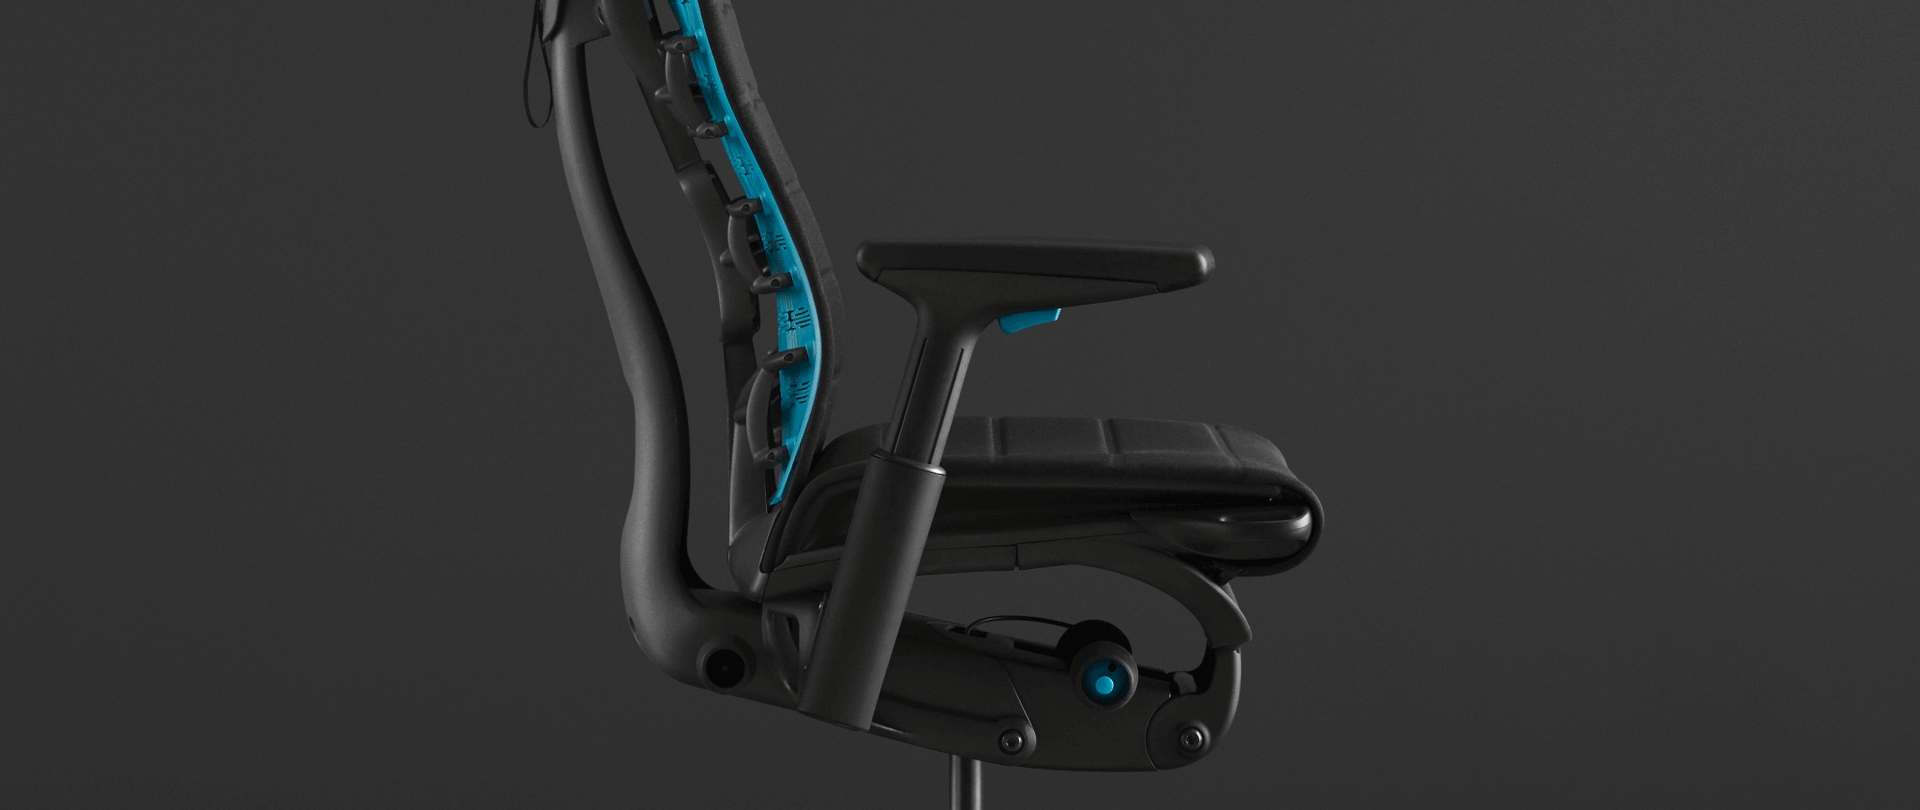 애니메이션이 Embody Gaming Chair에서 PostureFit 척추 지지대를 강조합니다. 검은색 배경의 의자 사진 위에 애니메이션을 입힙니다.